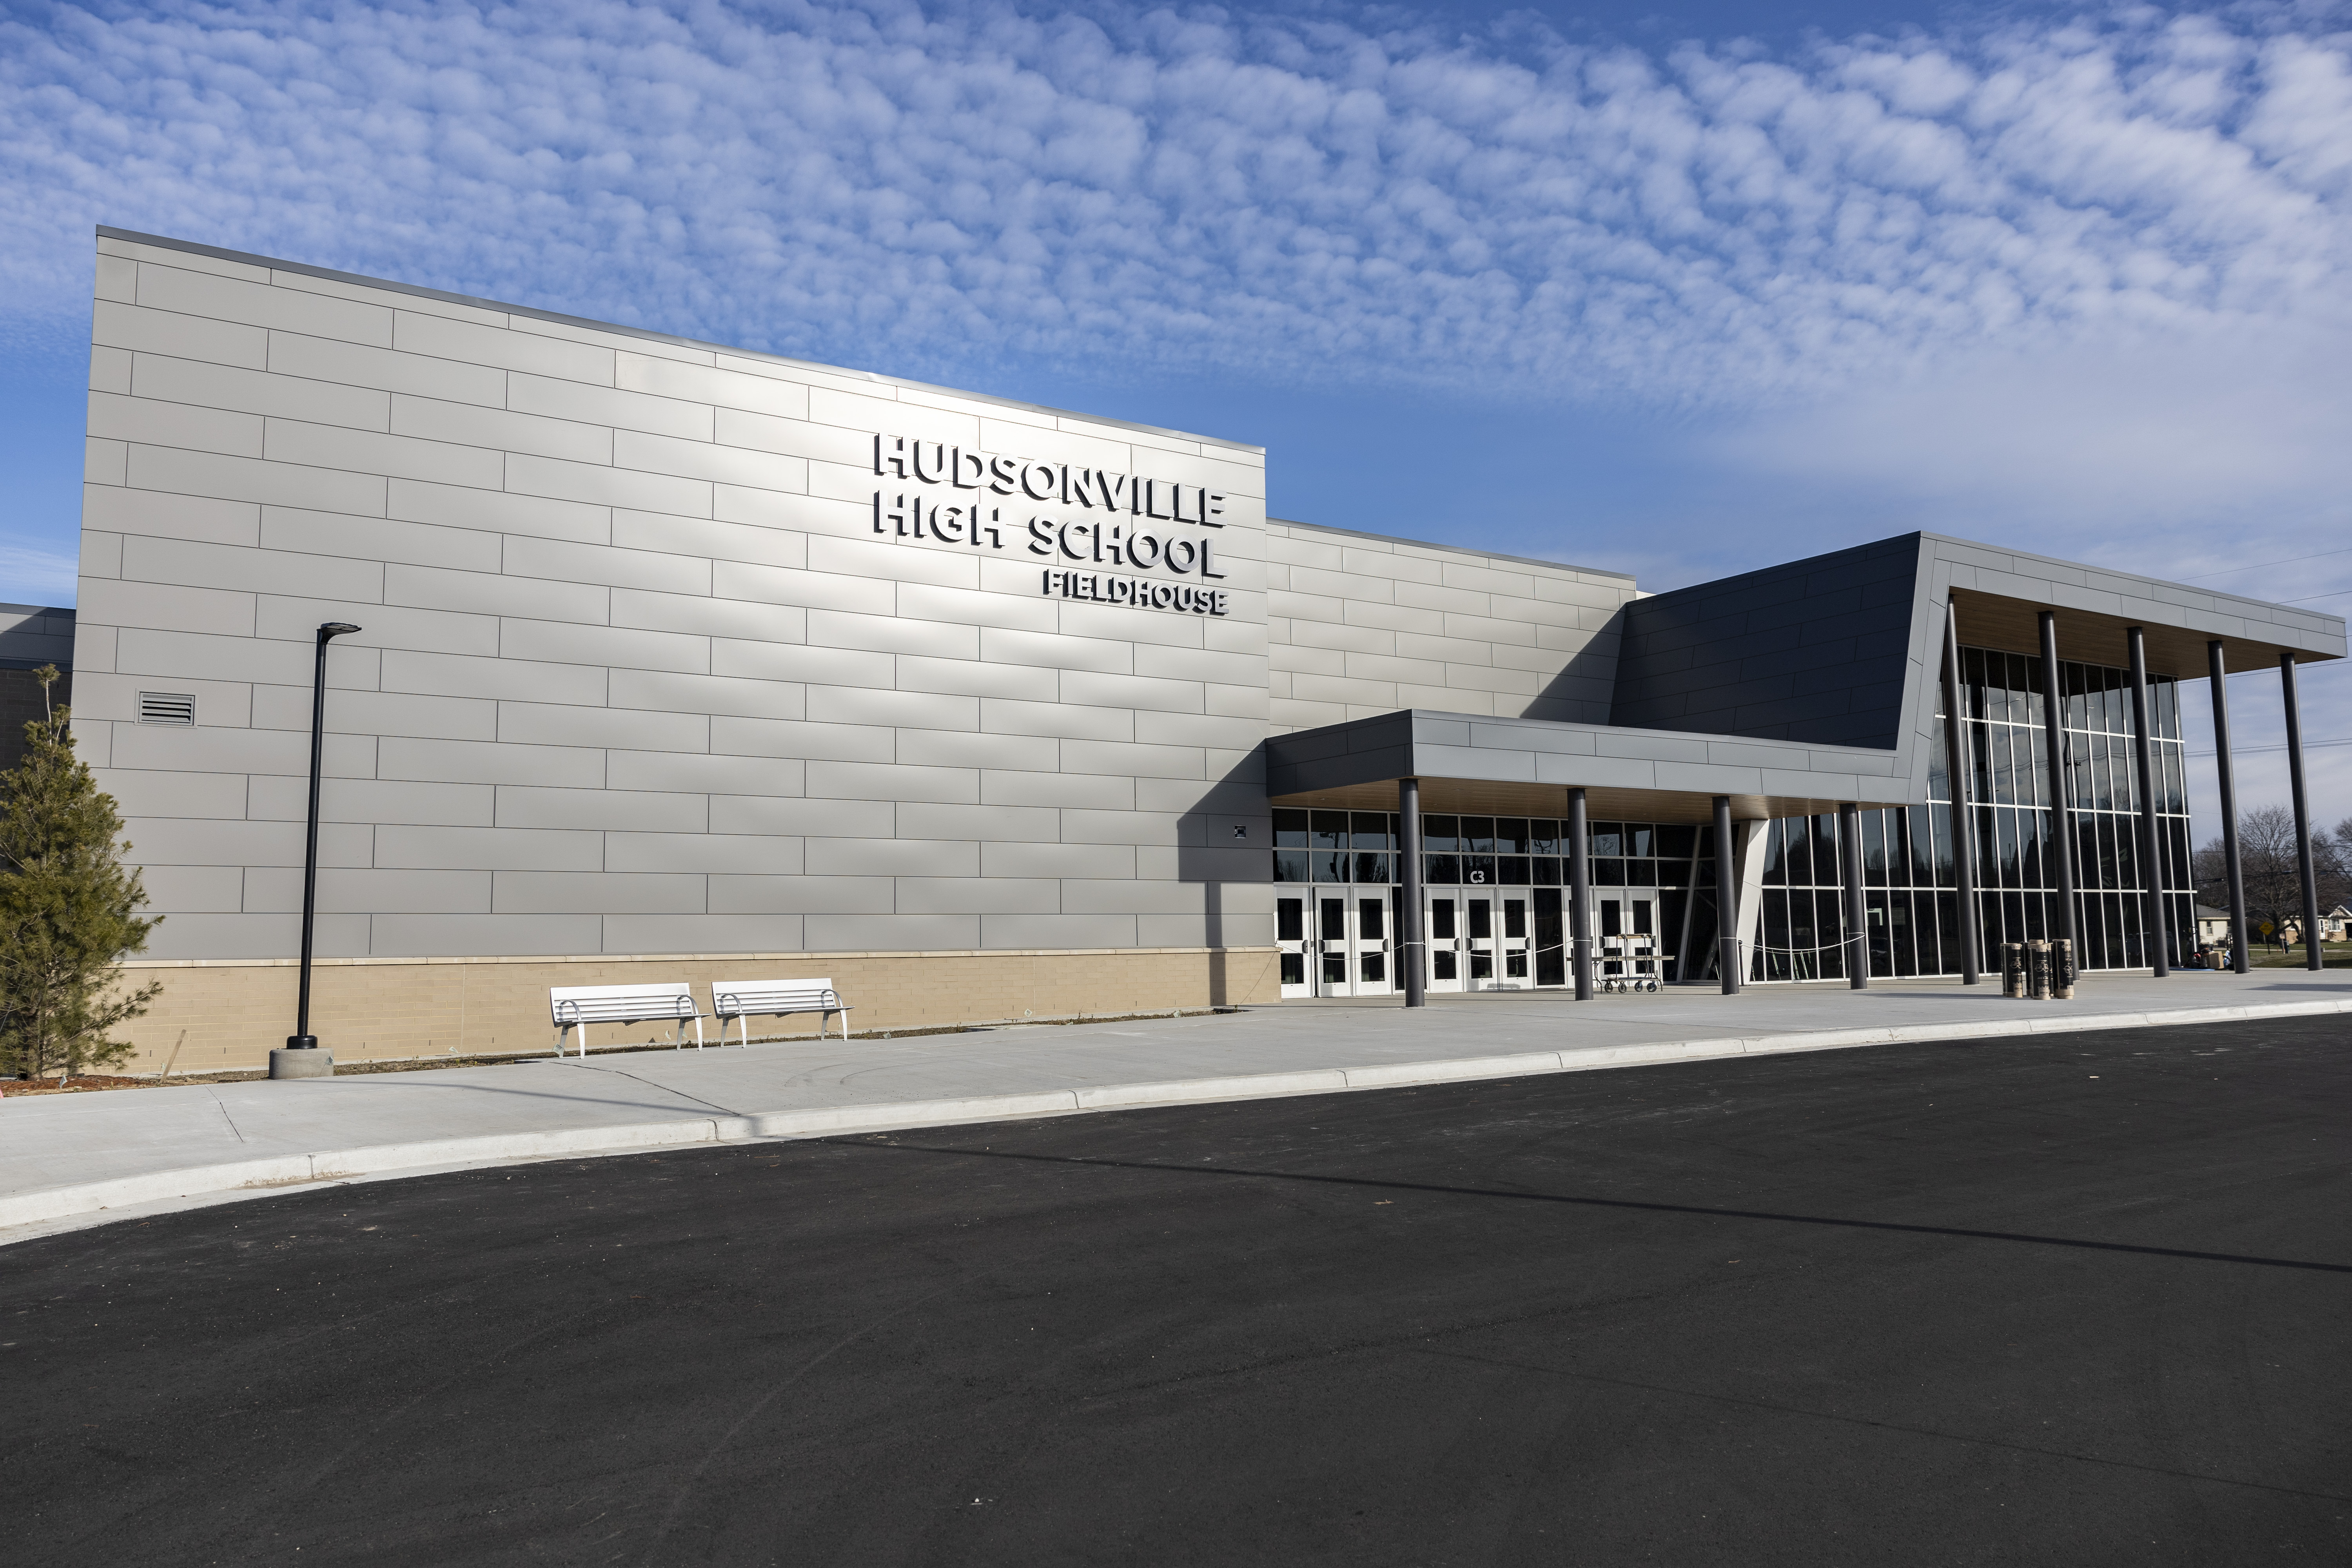 Take a look inside Hudsonville High School's new $26.5M fieldhouse 